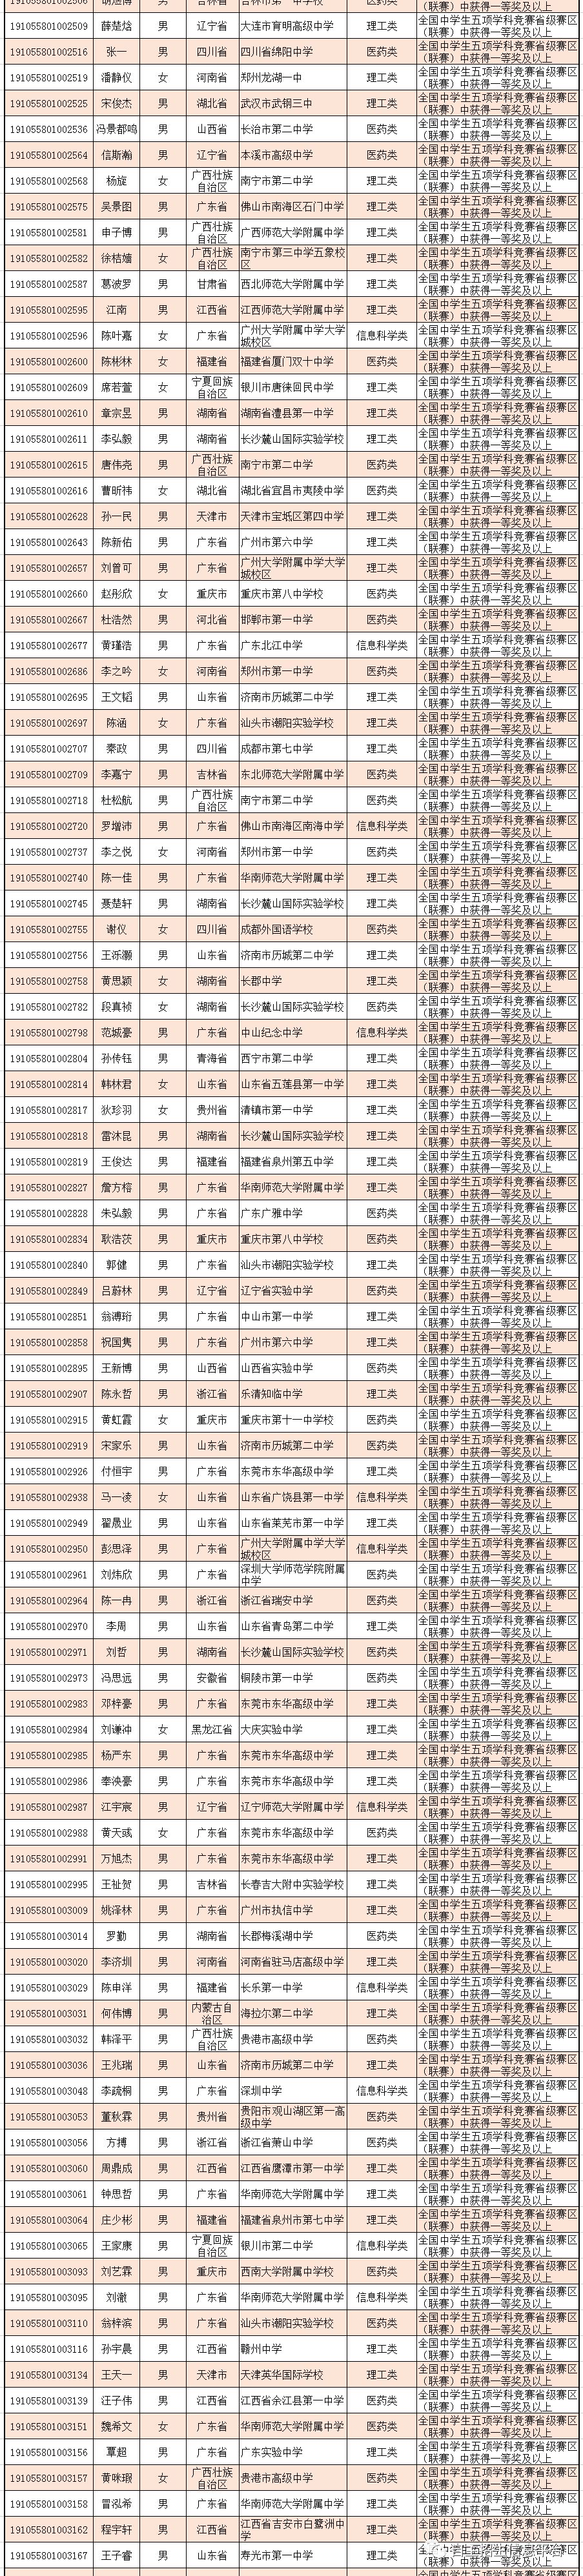 中山大学2019自主招生初审名单发布！共通过398人 